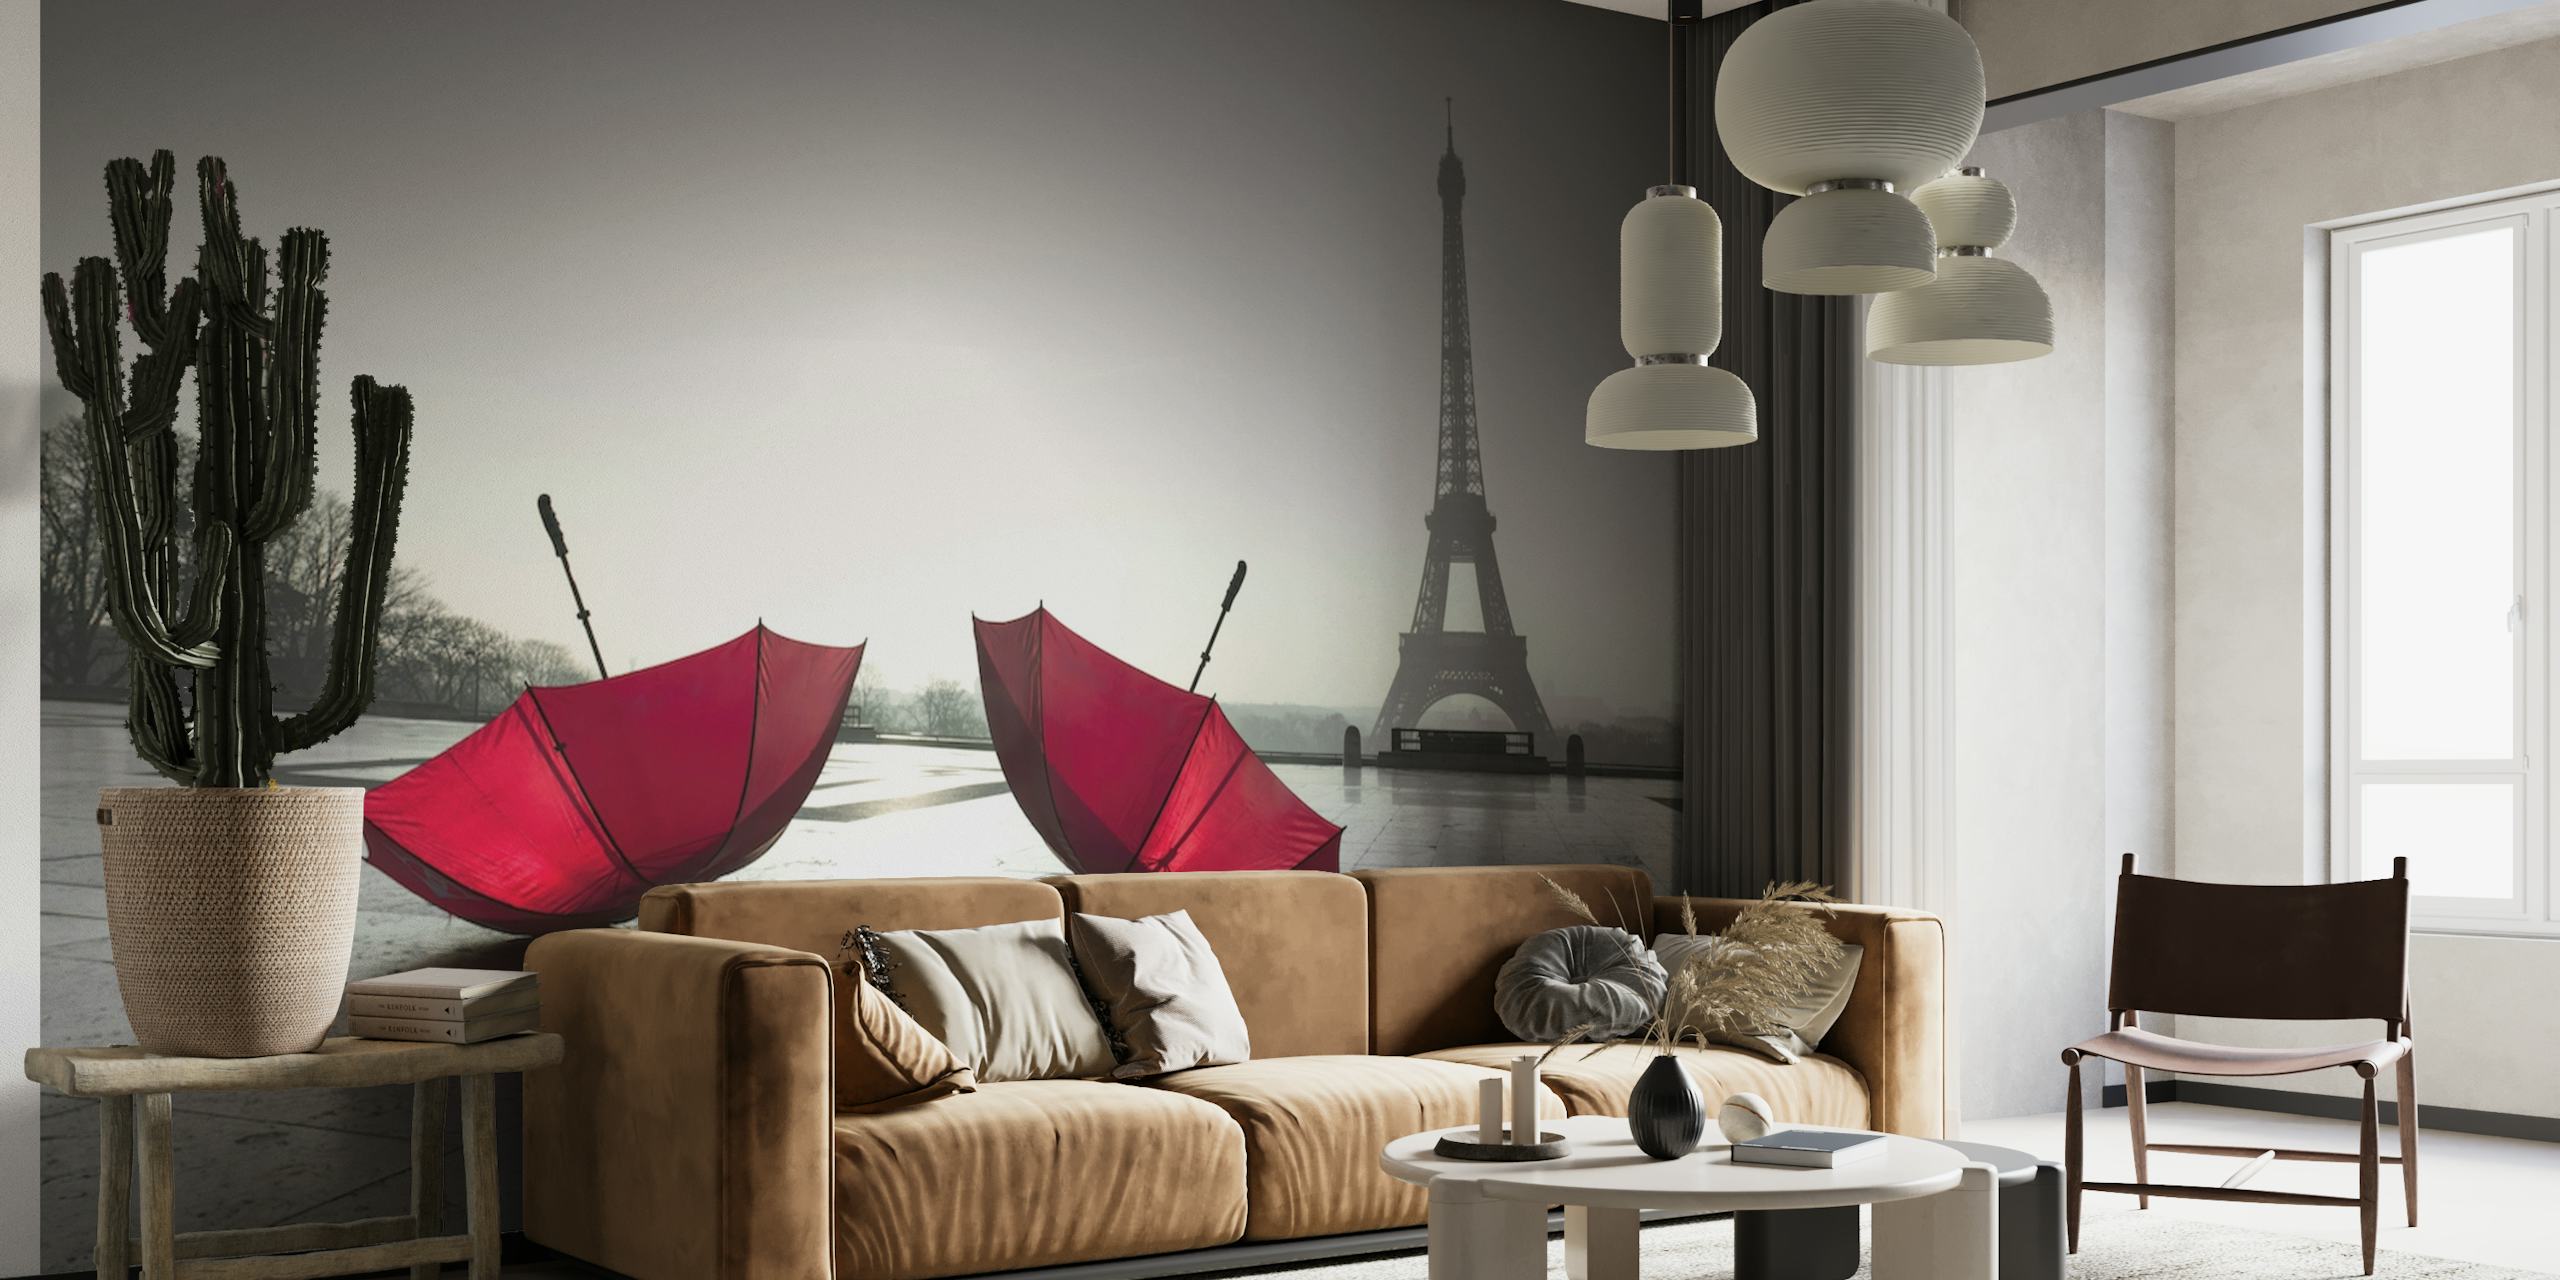 Parijse scène met rode parasols voor de Eiffeltoren op een mistige ochtend.